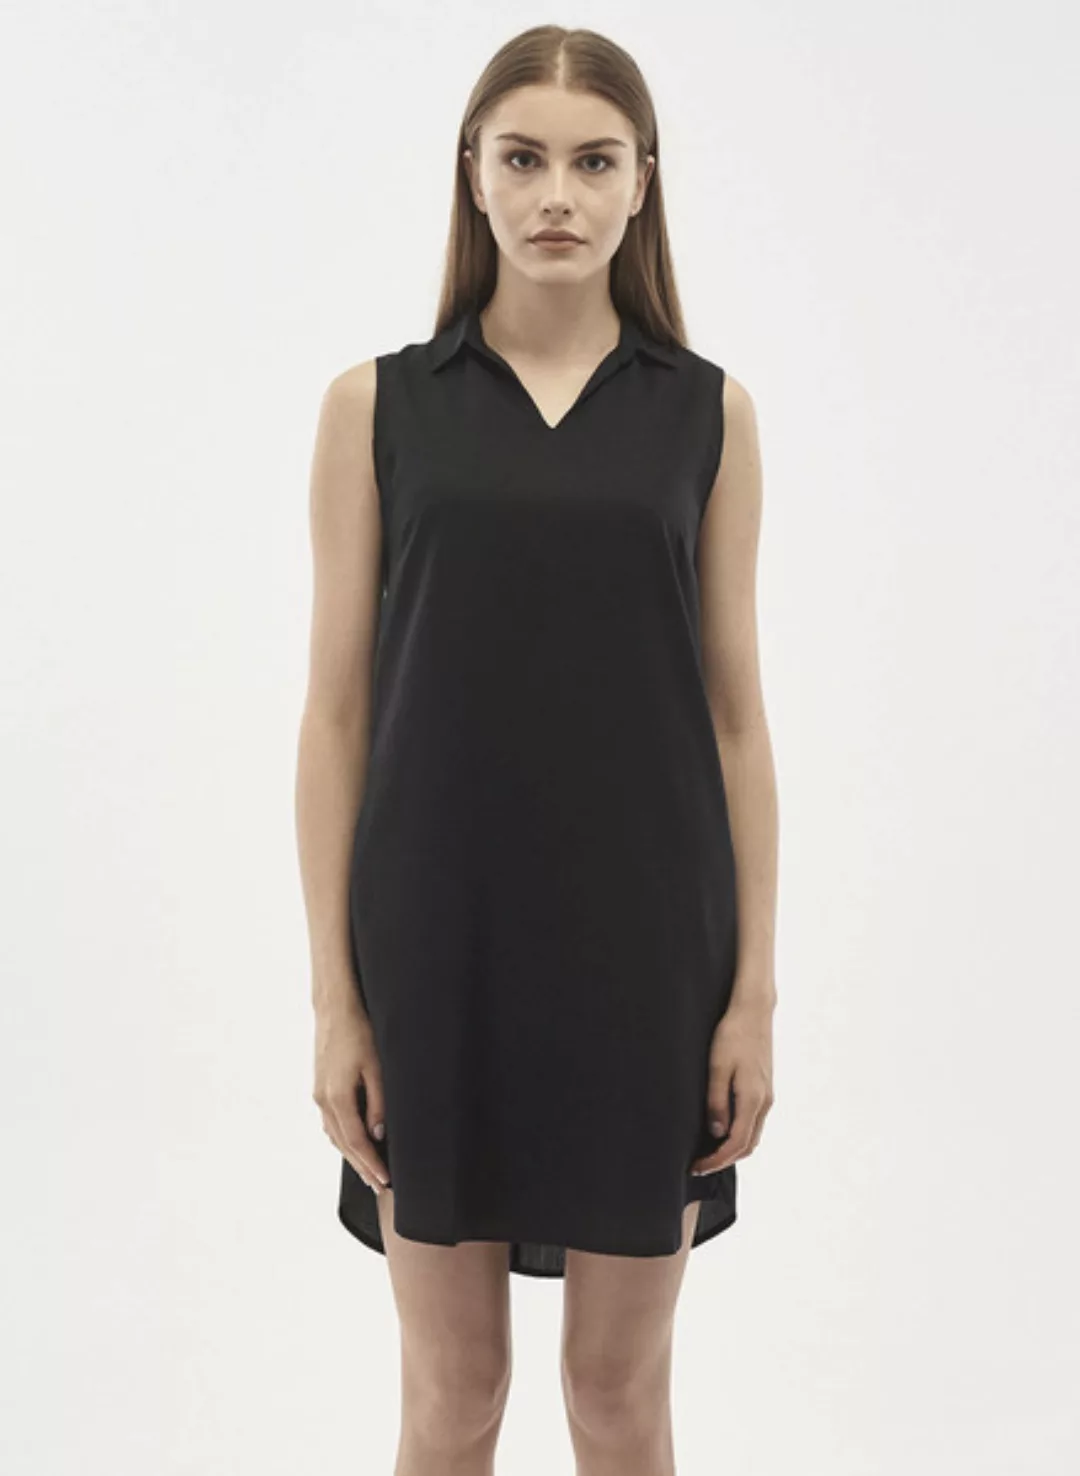 Kleid Aus Tencel Mit Hemdkragen günstig online kaufen